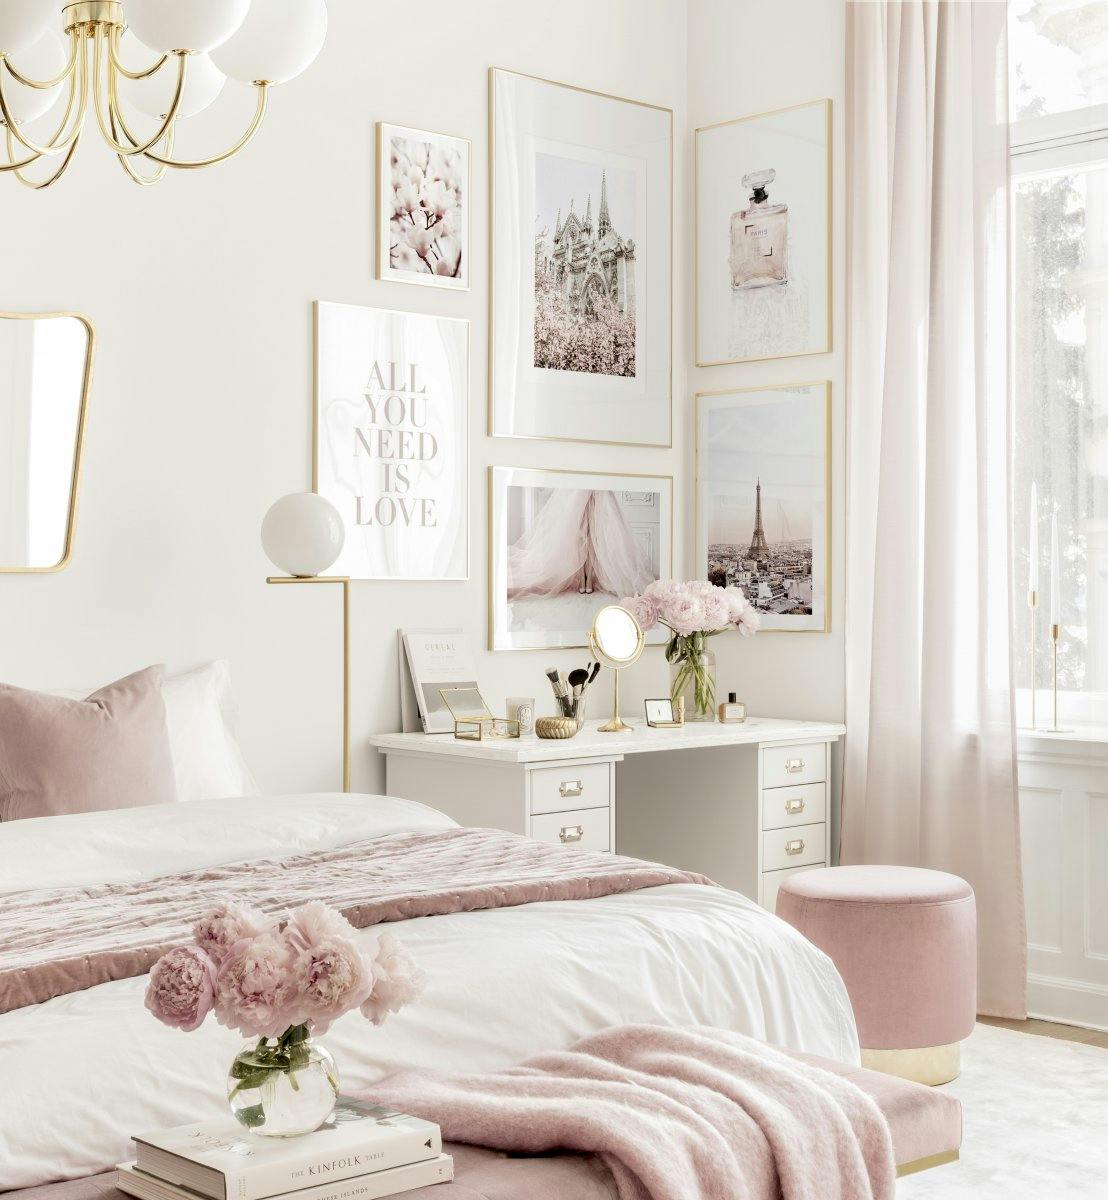 Rozowa paryska galeria plakatow plakaty moda obrazy Paryz rozowa sypialnia